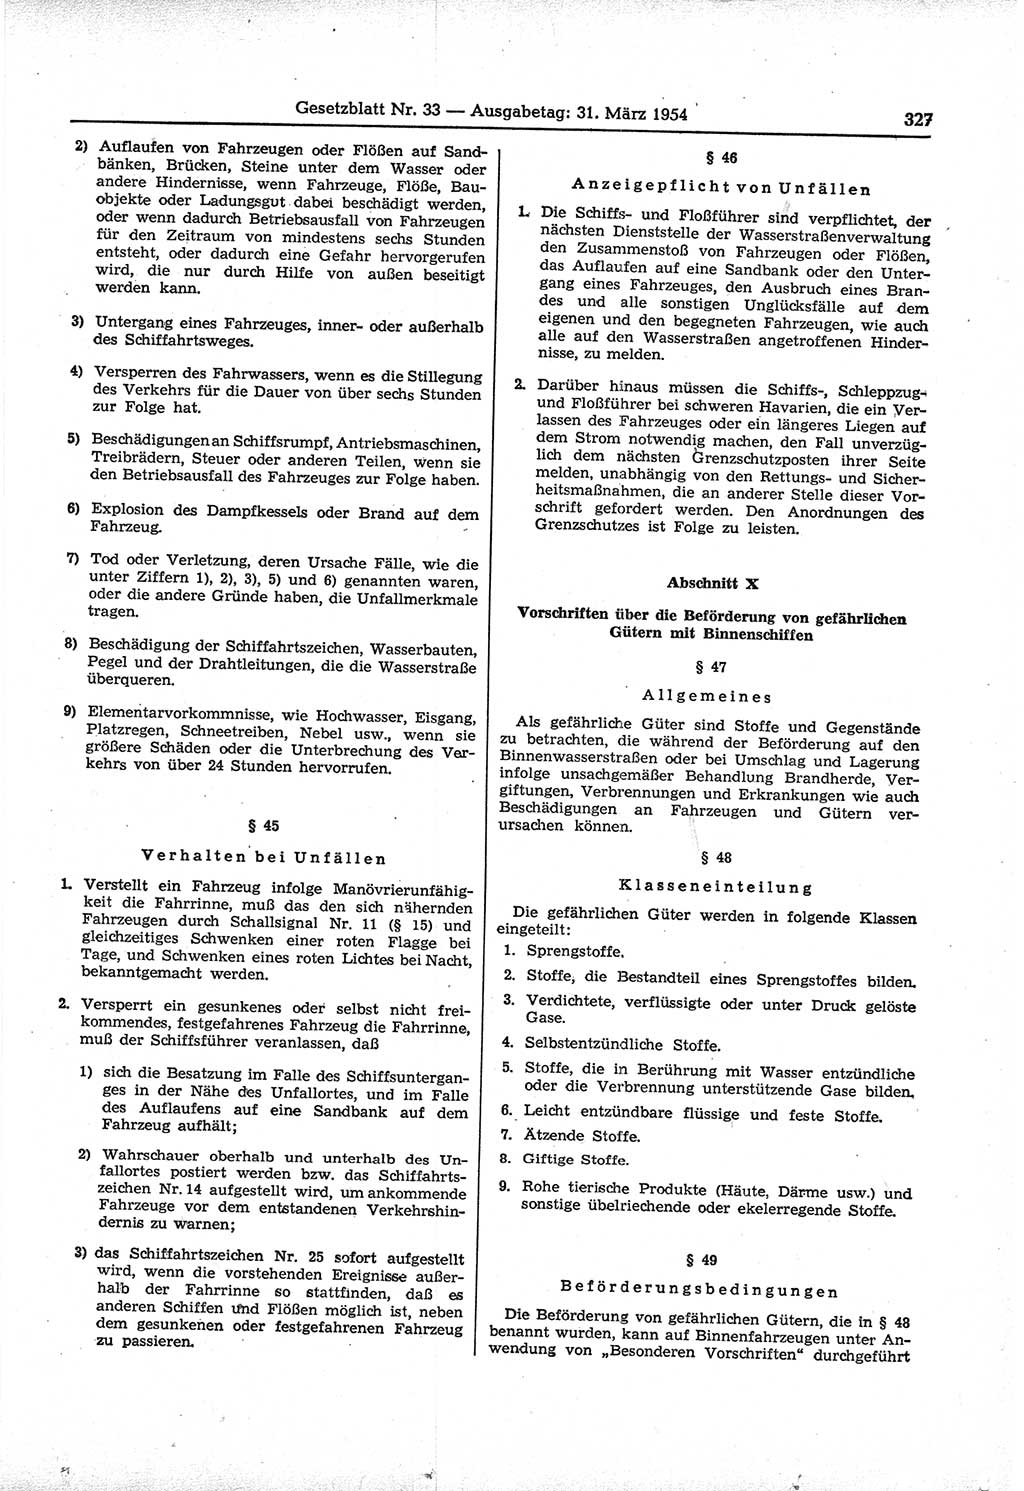 Gesetzblatt (GBl.) der Deutschen Demokratischen Republik (DDR) 1954, Seite 327 (GBl. DDR 1954, S. 327)